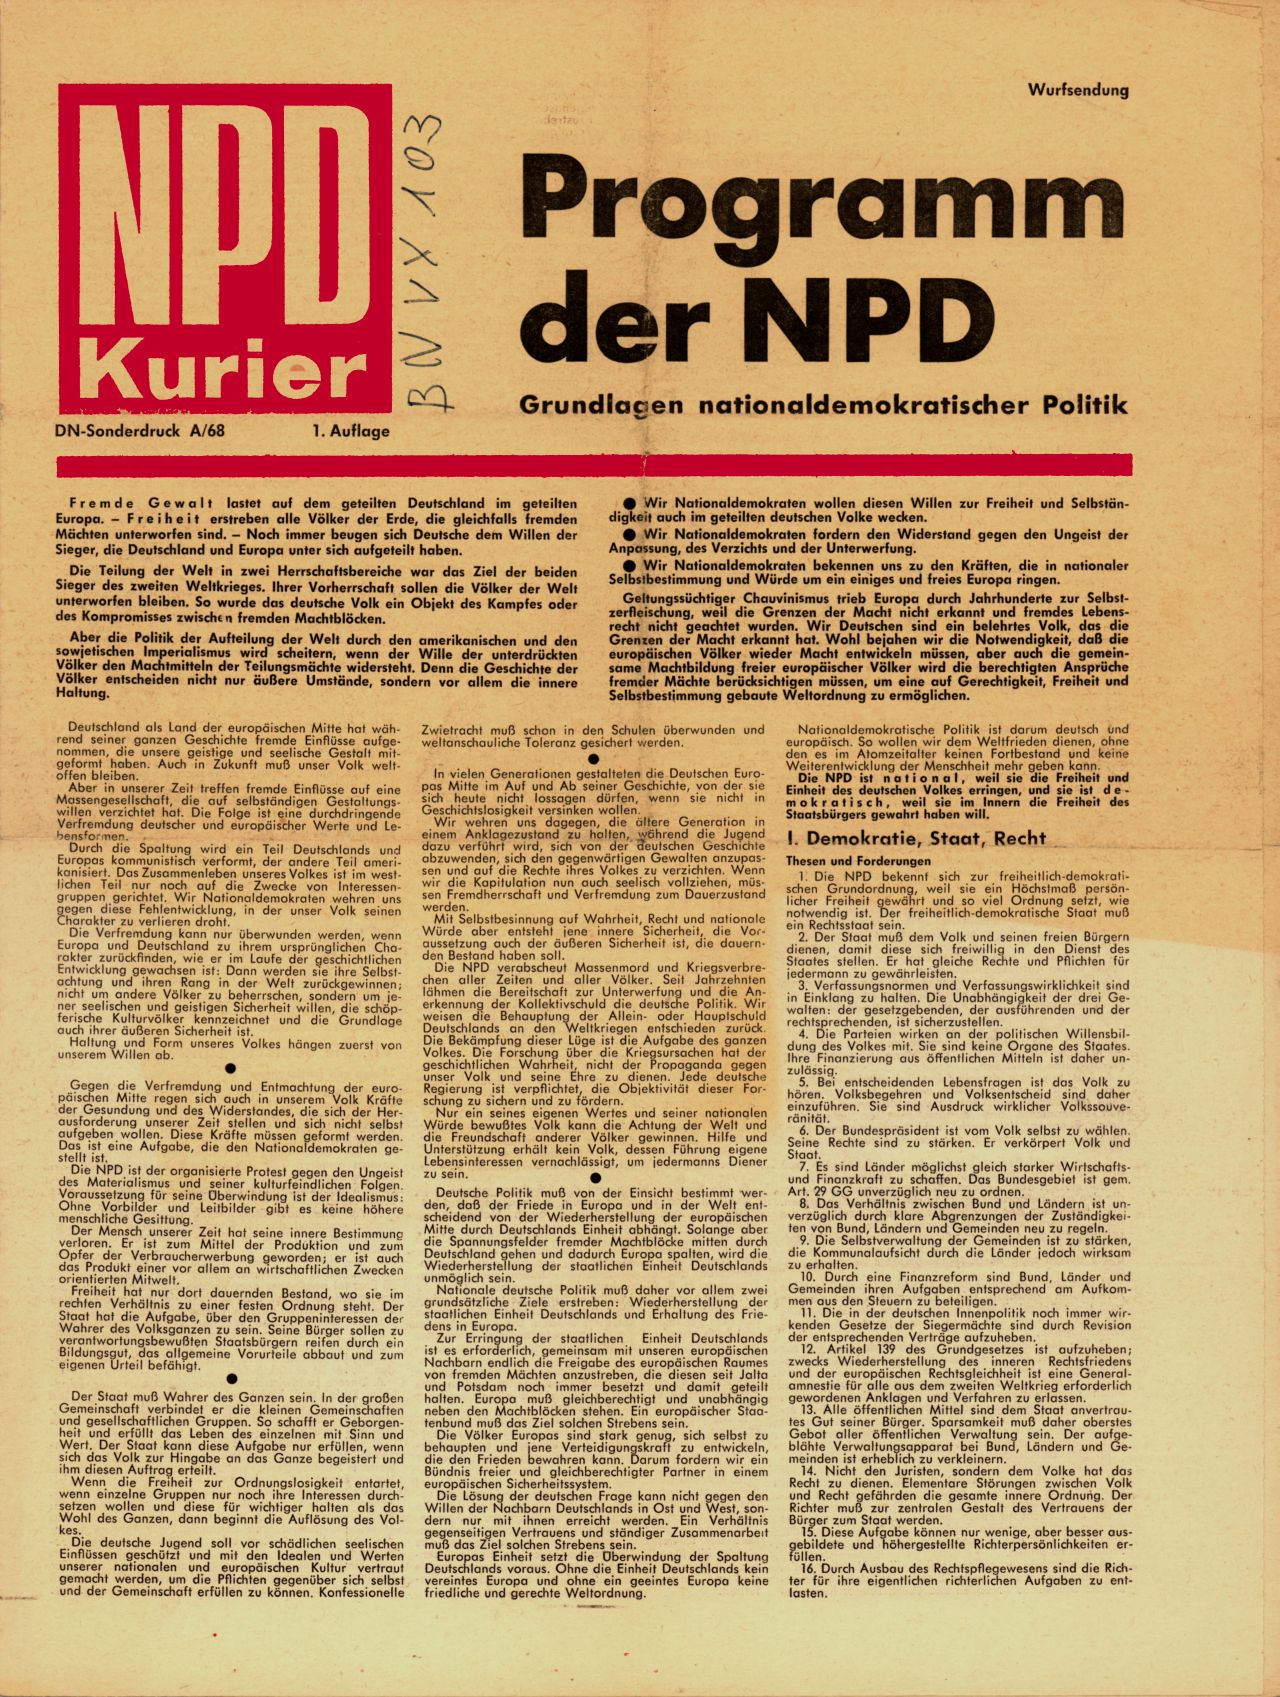 Bei diesem Sonderdruck des NPD Kuriers handelt es sich um eine Wurfsendung mit dem Programm der NPD. Auf vier Seiten sind die 'Grundlagen nationaldemokratischer Politik' abgedruckt. Auf der letzten Seite befinden sich je ein Vordruck für eine Beitrittserklärung zu Partei und ein Abonnement der 'Deutschen Nachrichten'.